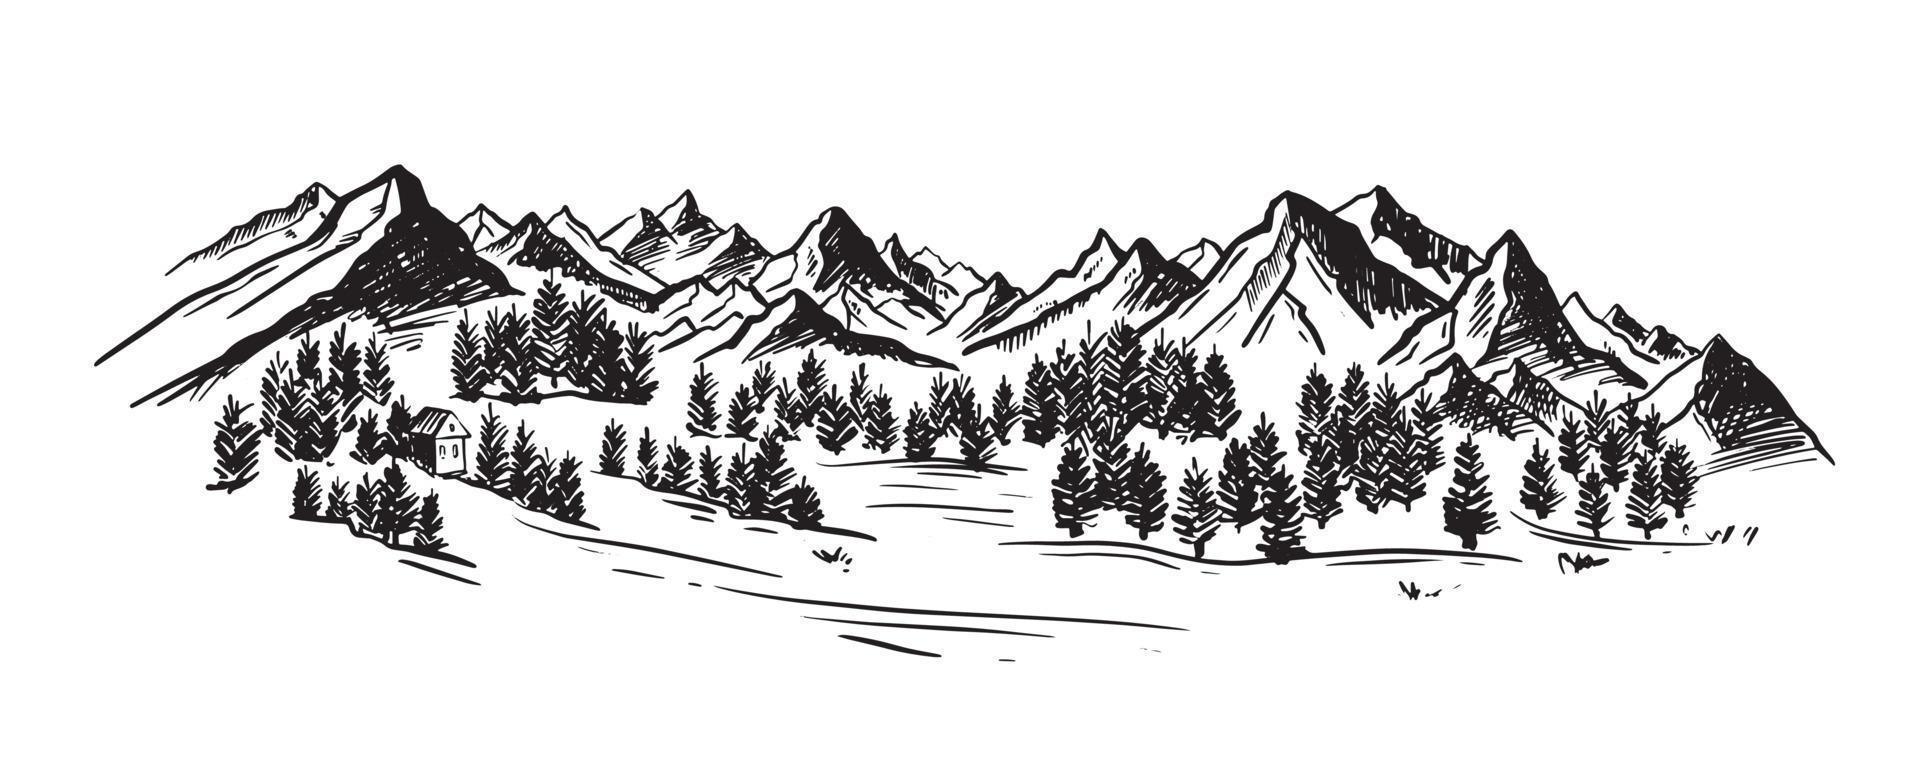 paysage de montagne, illustration dessinée à la main vecteur